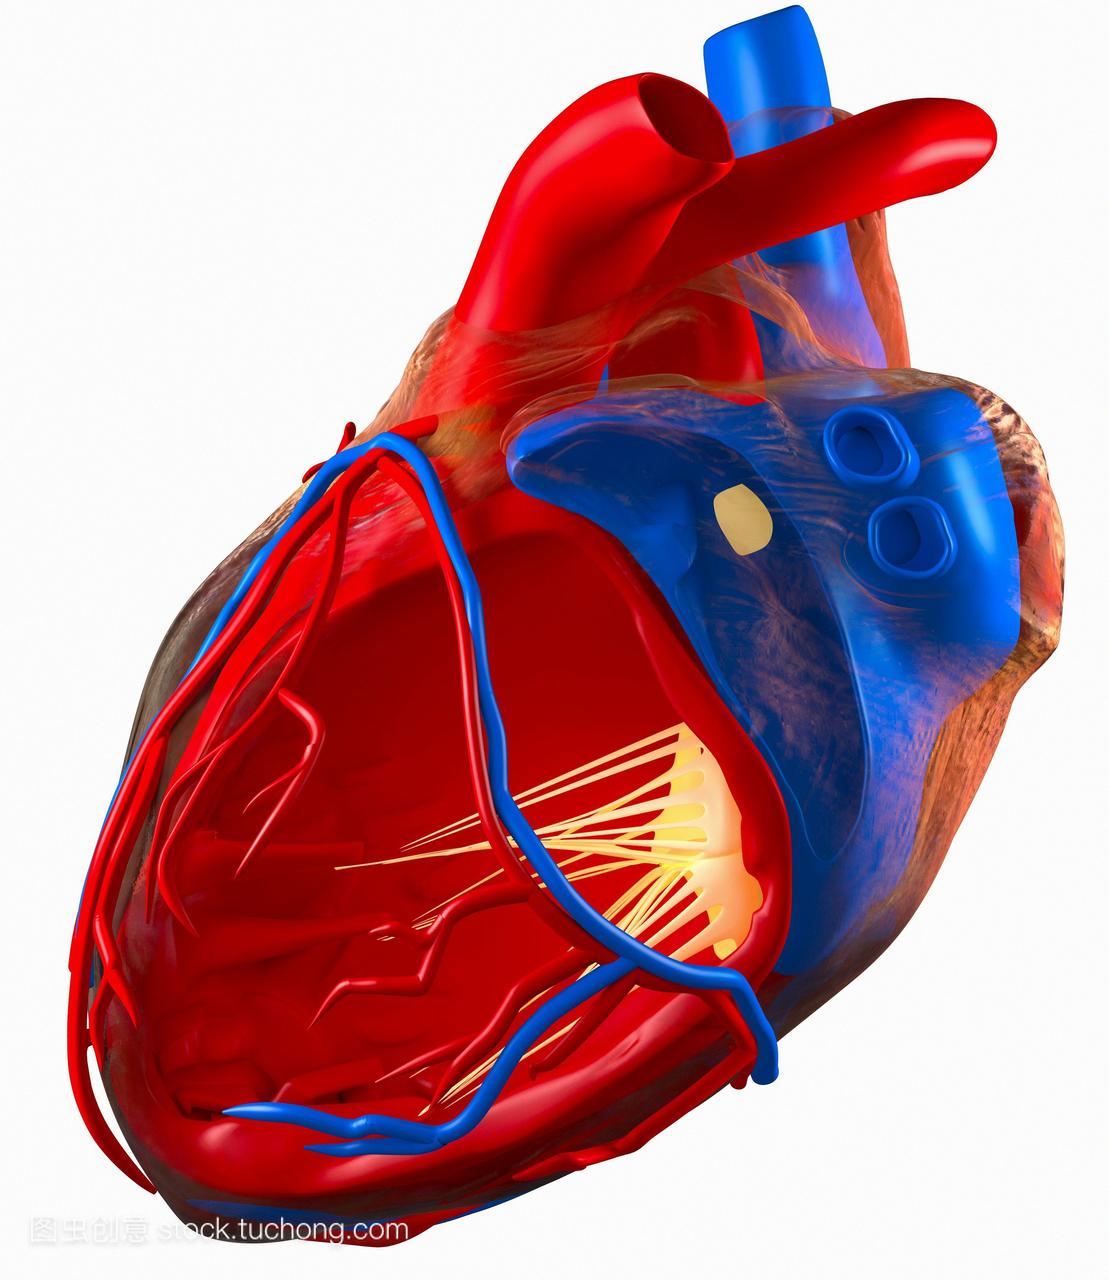 人类心脏的结构。电脑绘图的心脏左心房室显示